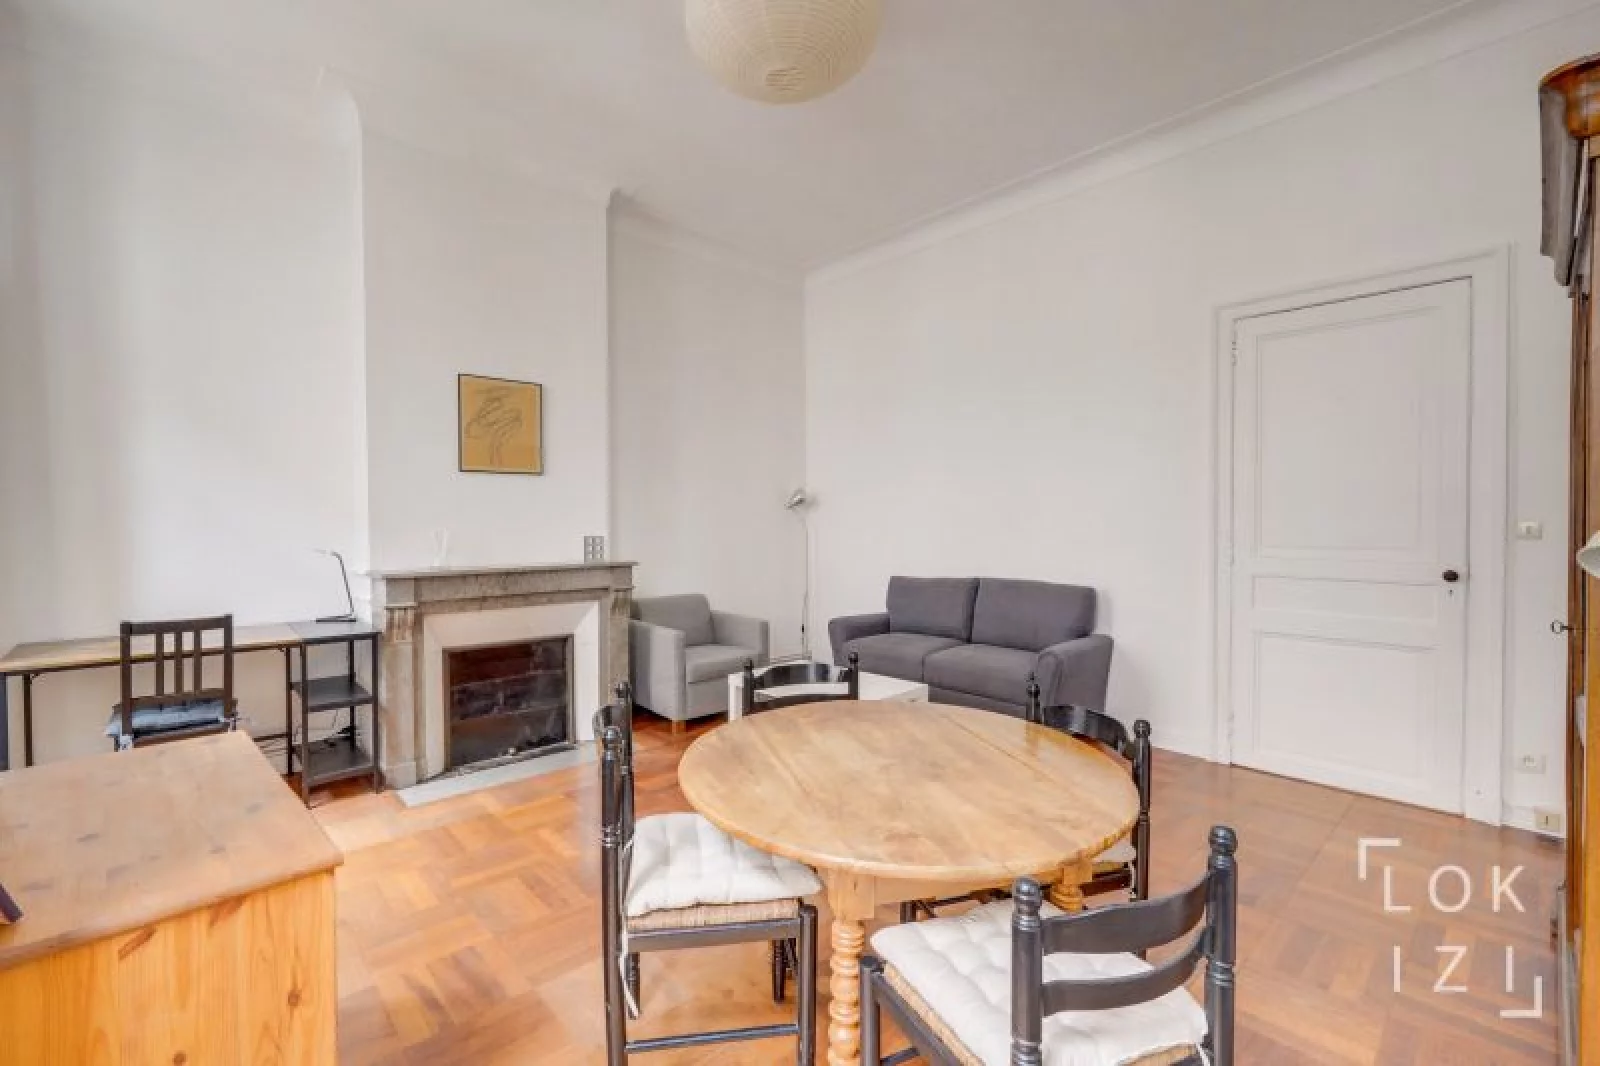 Location appartement meublé duplex 3 pièces 67m² (Bordeaux - Chartrons)